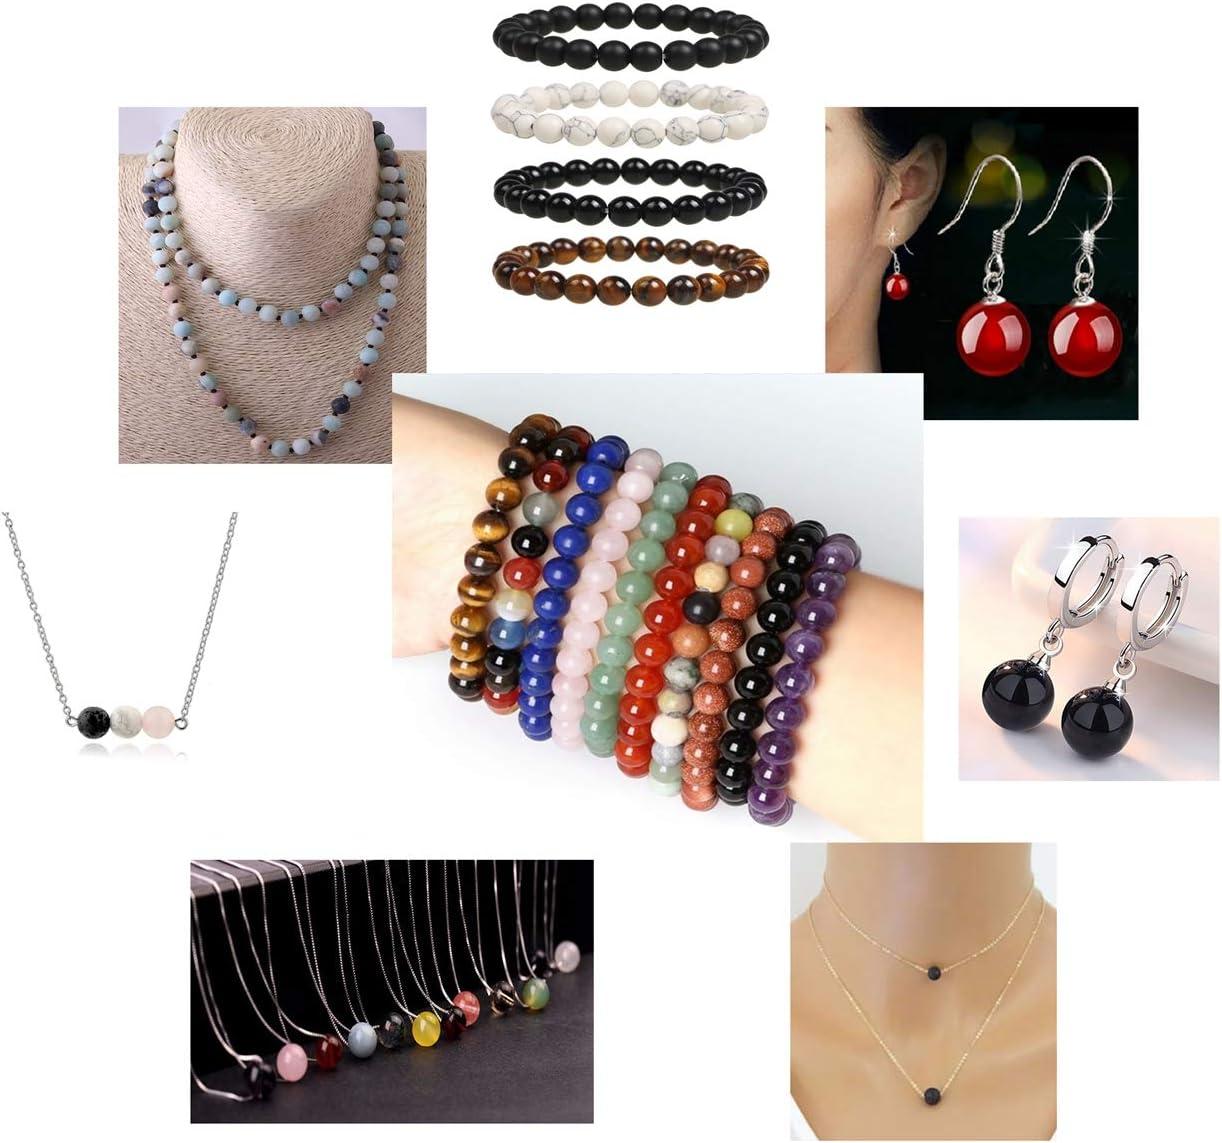 100pcs Beautiful Beads for Jewelry Making, Glass Kuwait